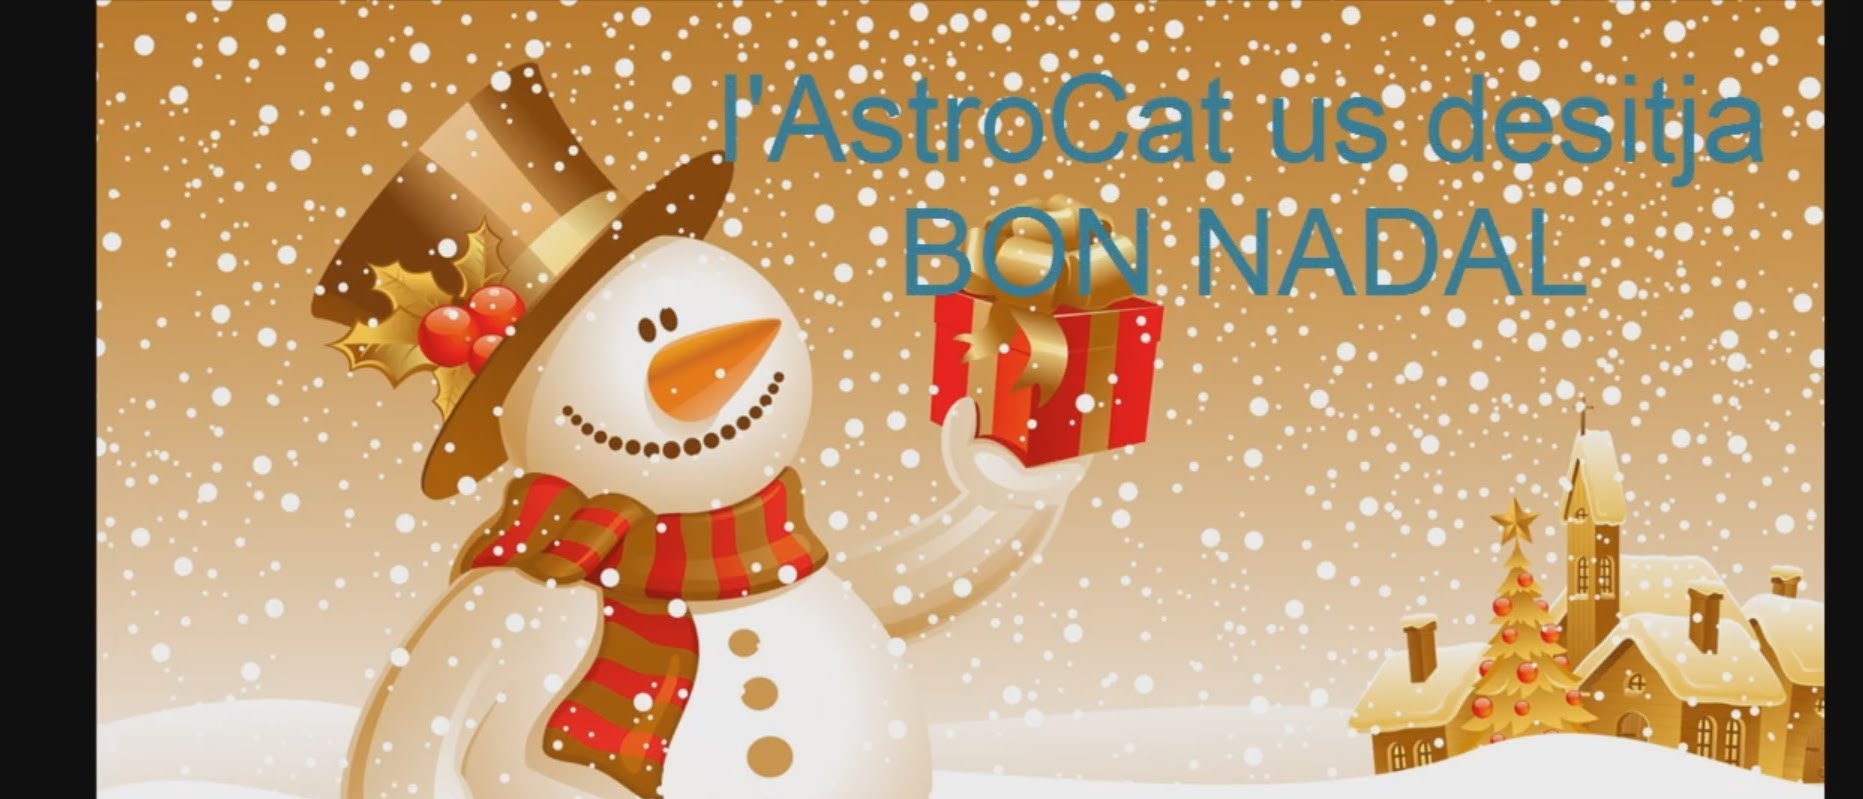 Especial Nadalent d'AstroCat de Albert Donaire i Malagelada